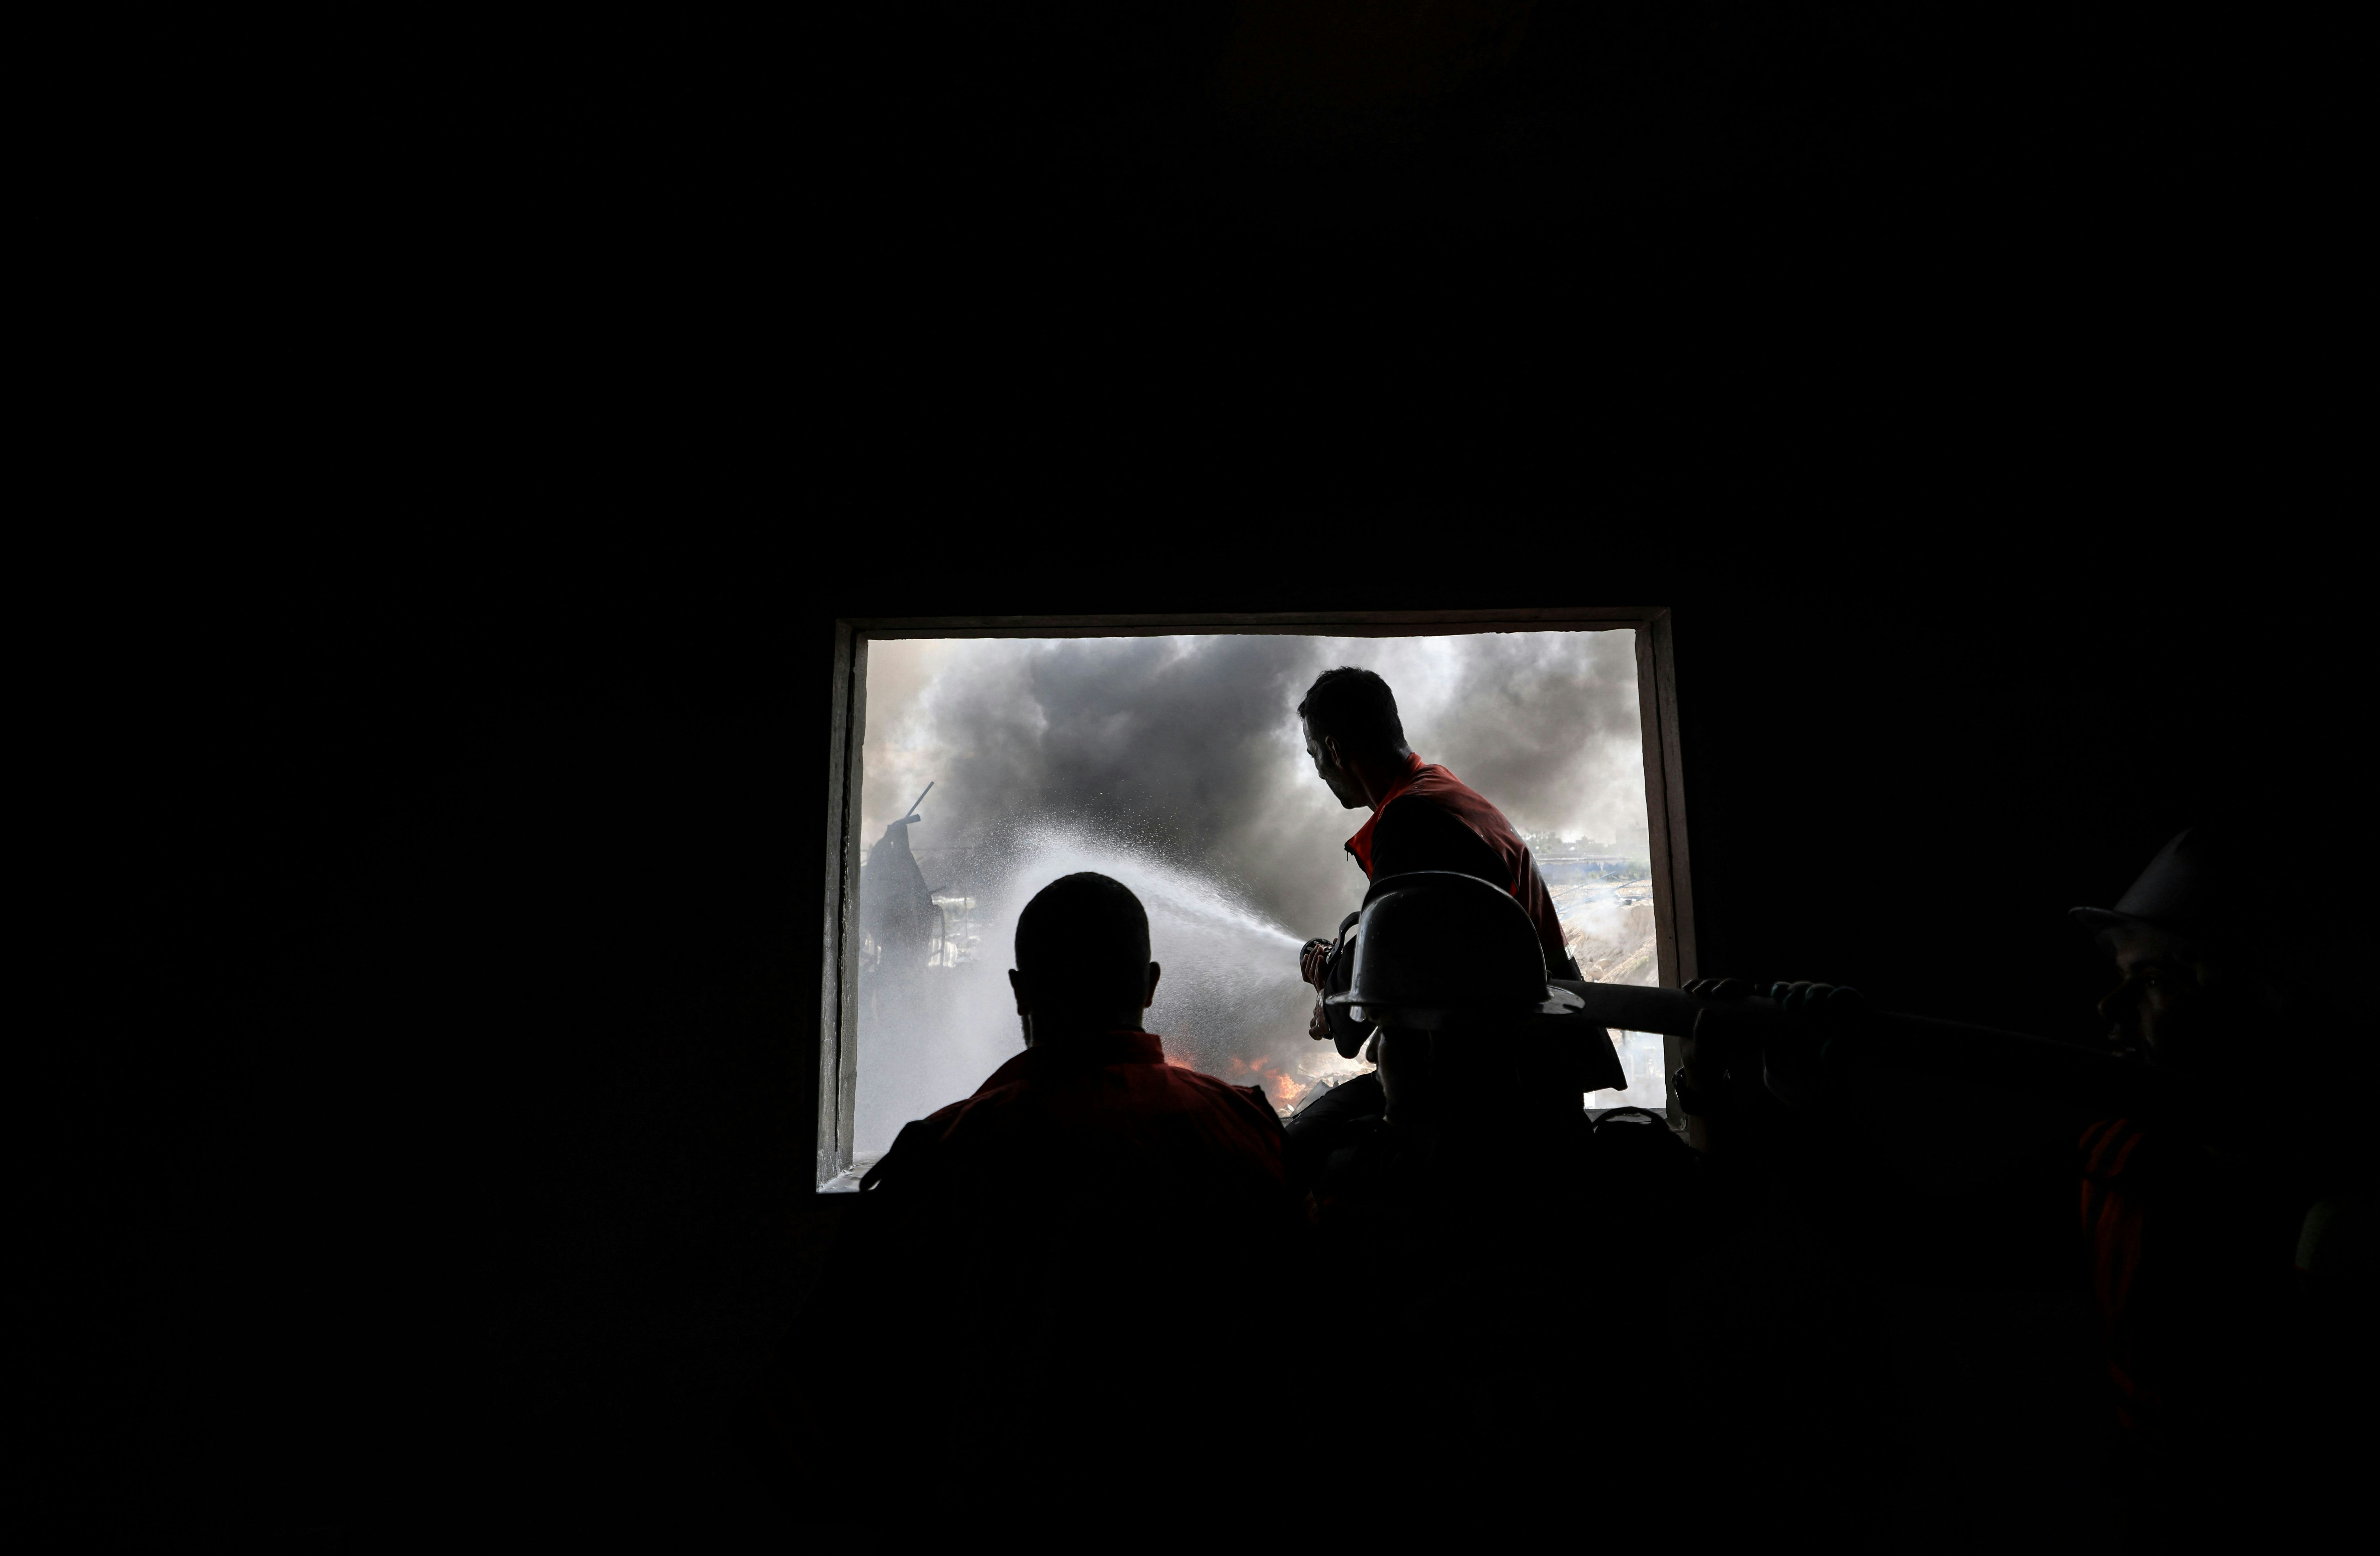 Палестинские пожарные тушат огромный пожар на фабрике матрасов Foamco к востоку от Джабалии в северной части сектора Газа, 17 мая 2021 года. (Фото MAHMUD HAMS/AFP) (Фото MAHMUD HAMS/AFP через Getty Images)